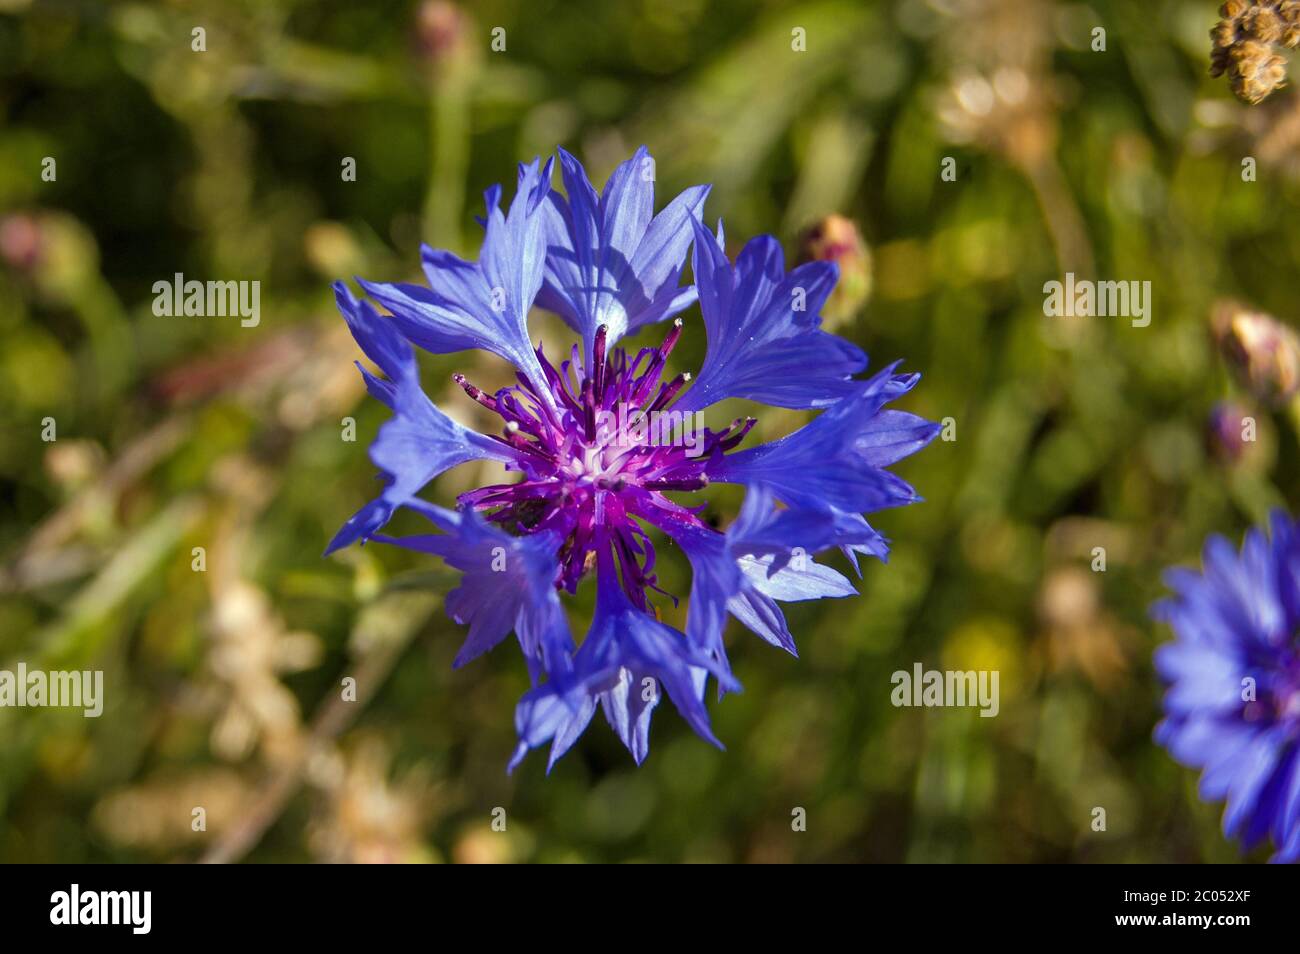 Primo piano immagine di un fiore di mais blu, latino nome cyanus. Campagna inglese, estate. Foto Stock